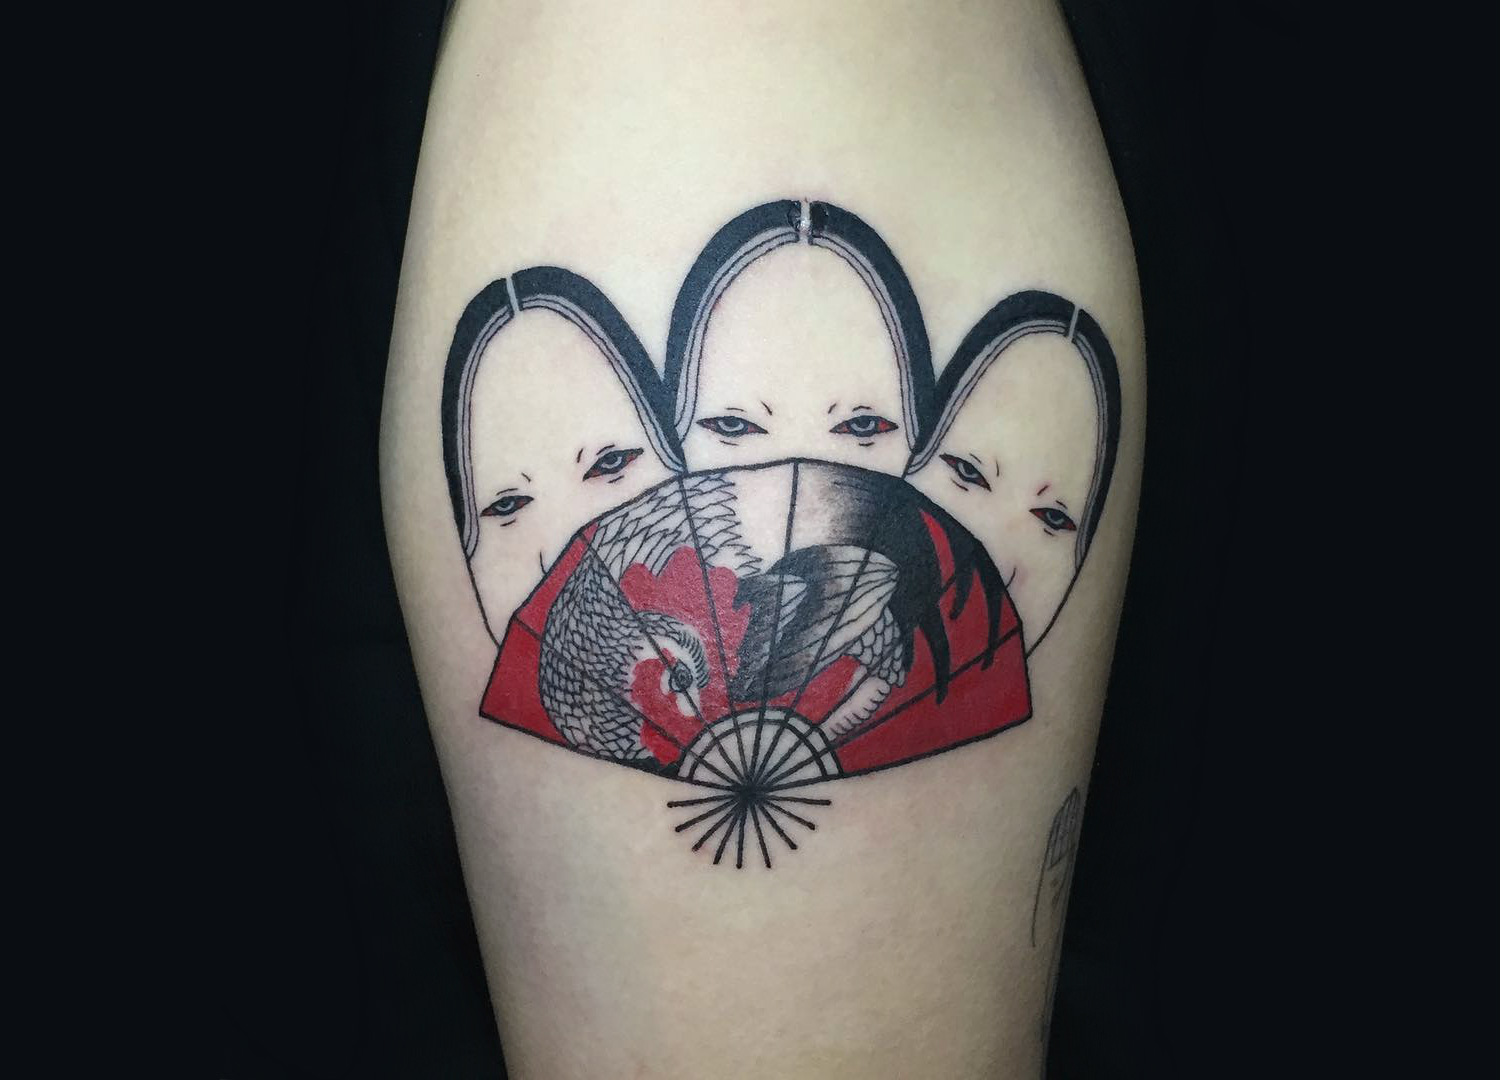 Japanese mask and fan tattoo by Suzani